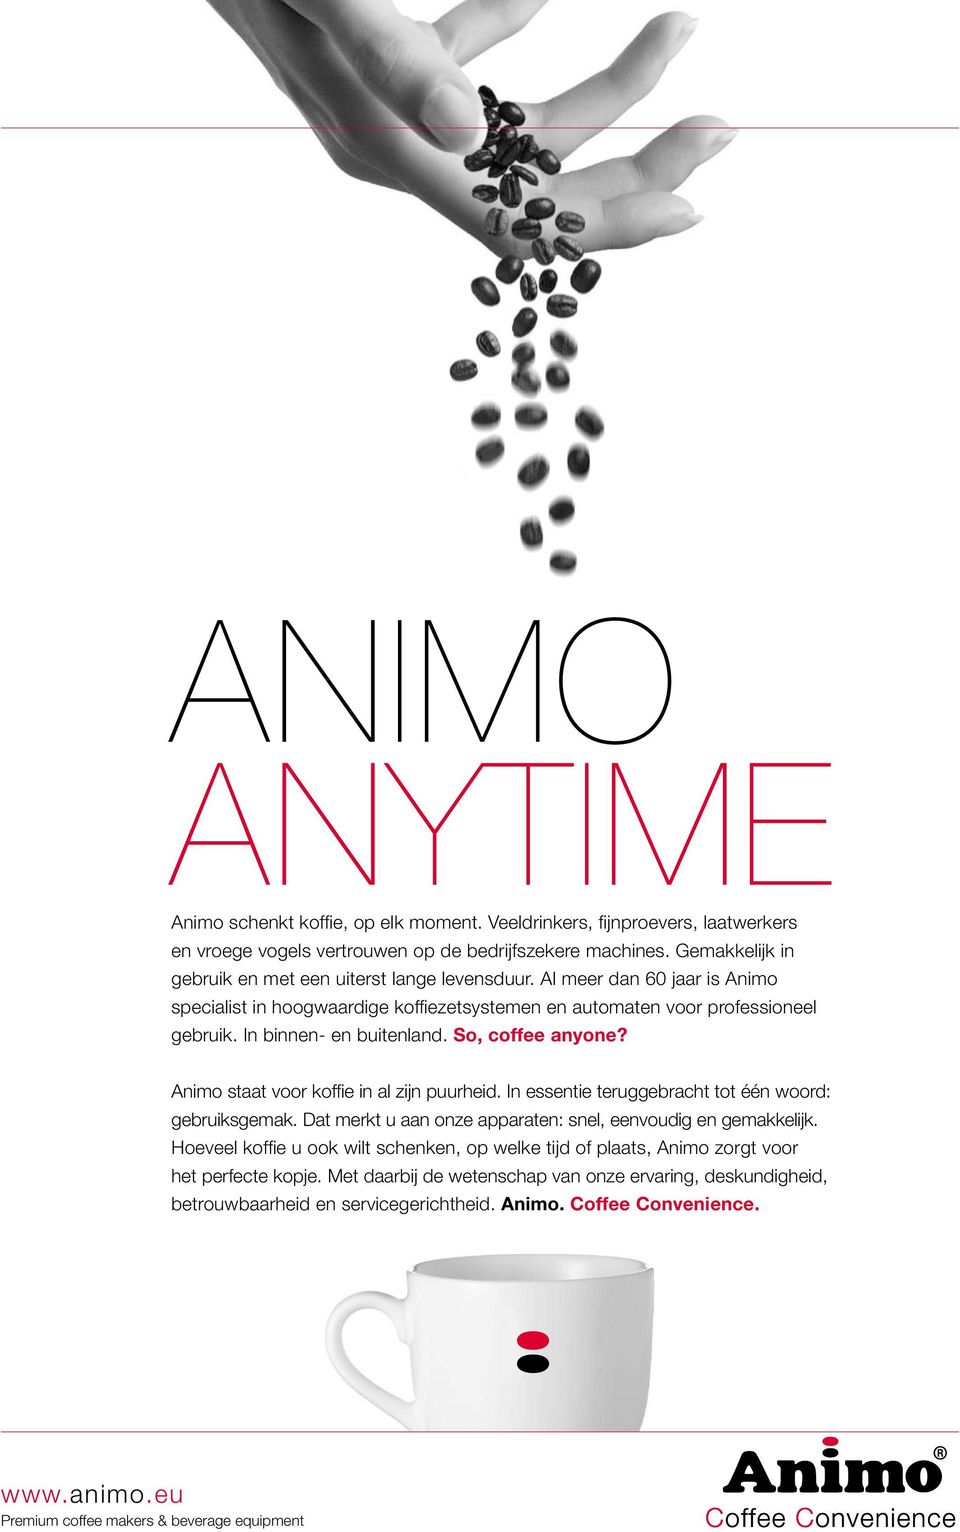 Animo staat voor koffie in al zijn puurheid. In essentie teruggebracht tot één woord: gebruiksgemak. Dat merkt u aan onze apparaten: snel, eenvoudig en gemakkelijk.